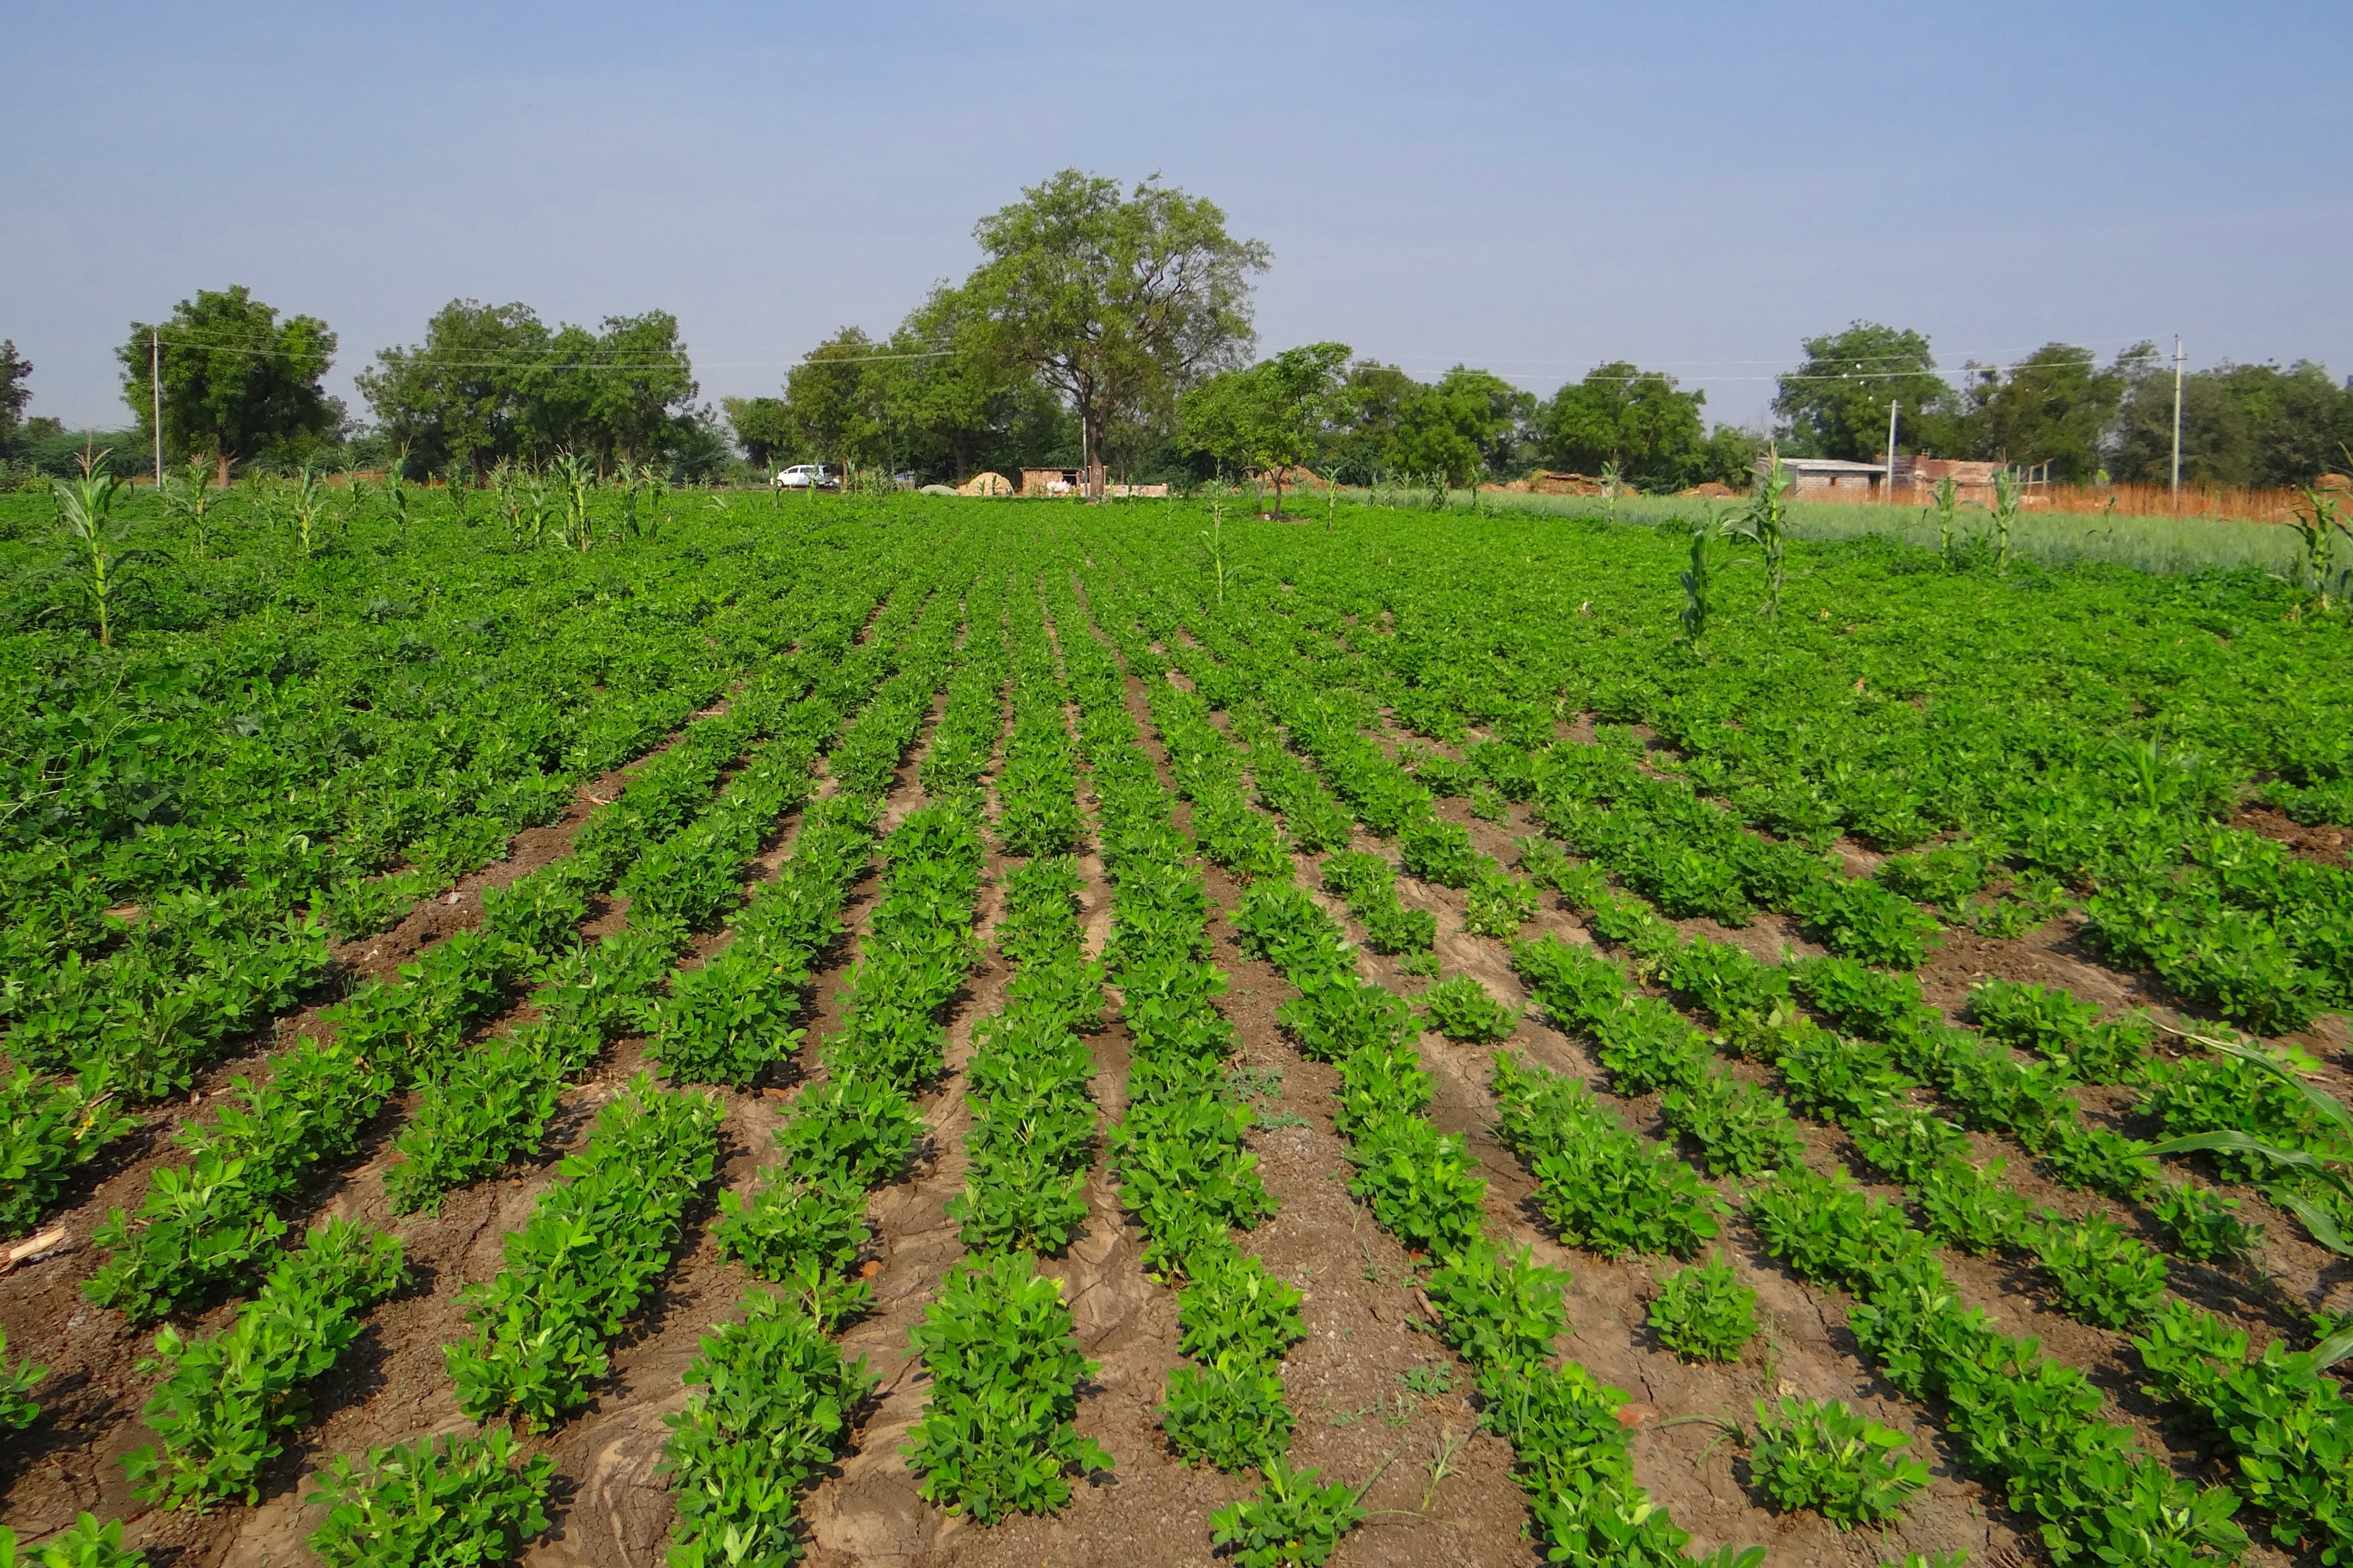 groundnut field, peanut crop, agriculture, oilseeds, karnataka